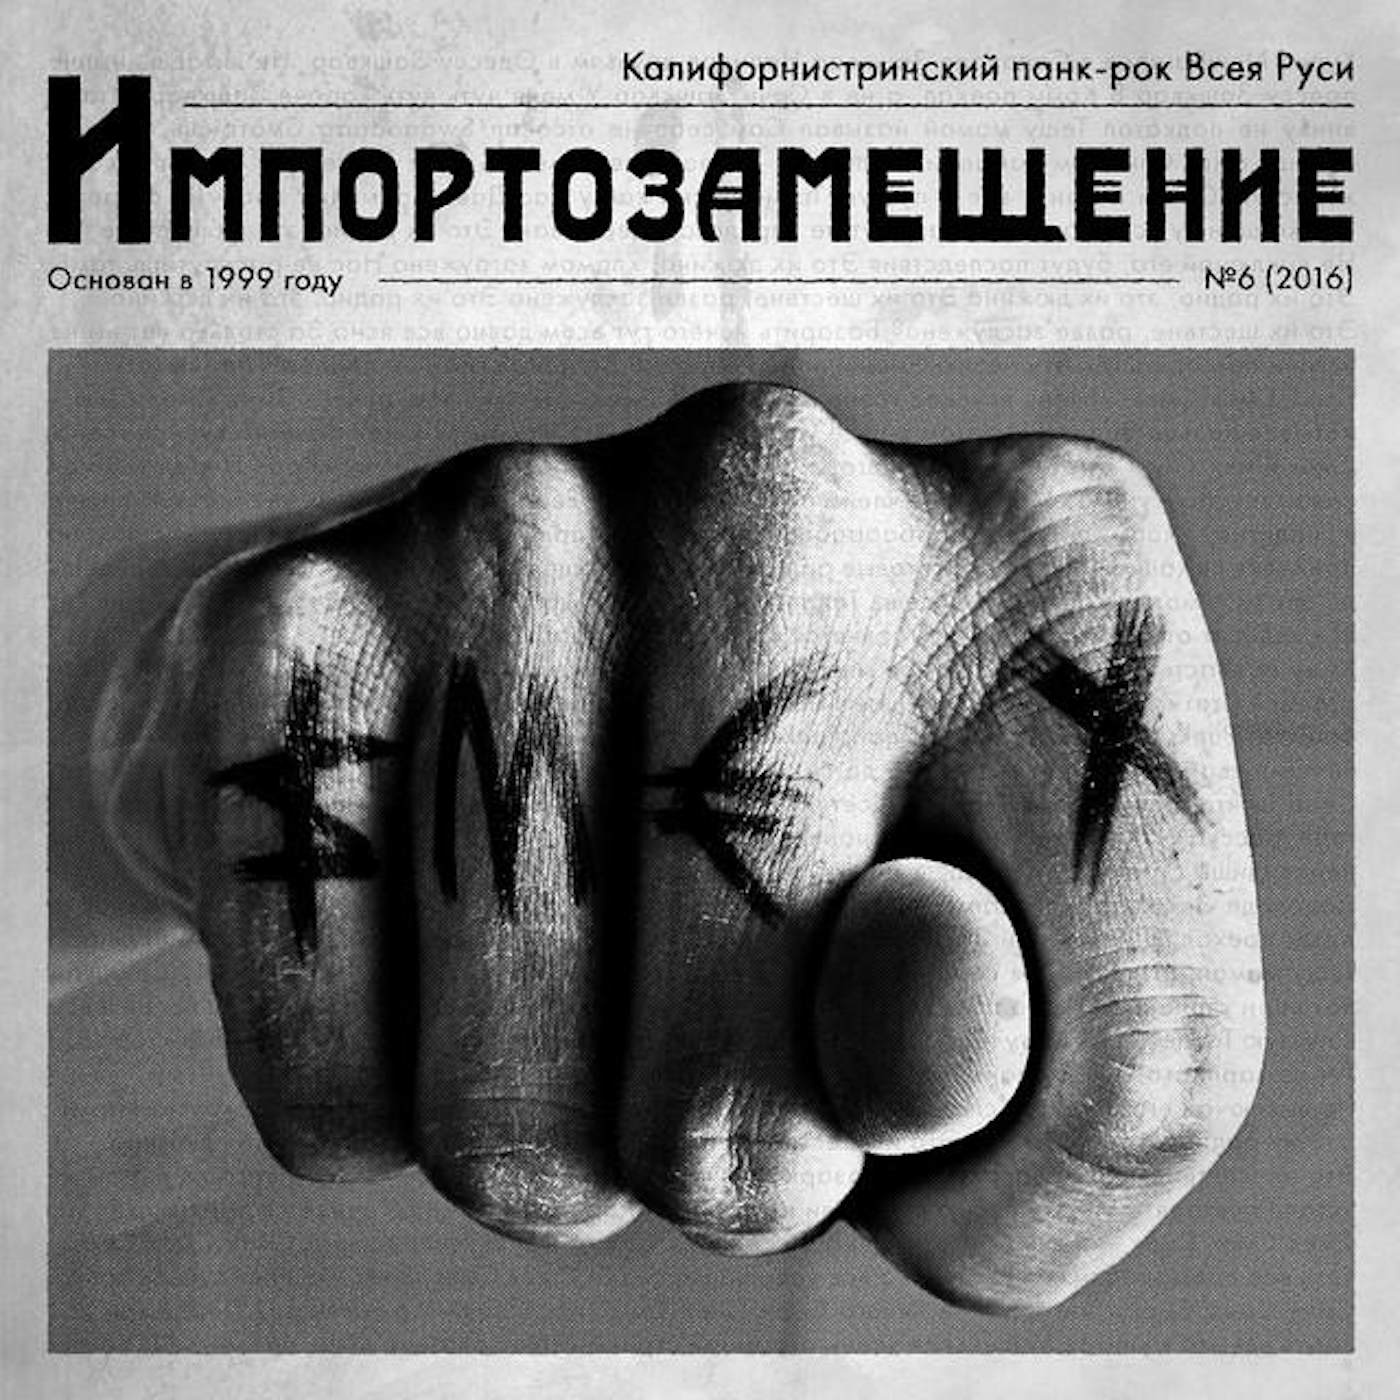 Russian Rock Merch And Vinyl | Merchbar